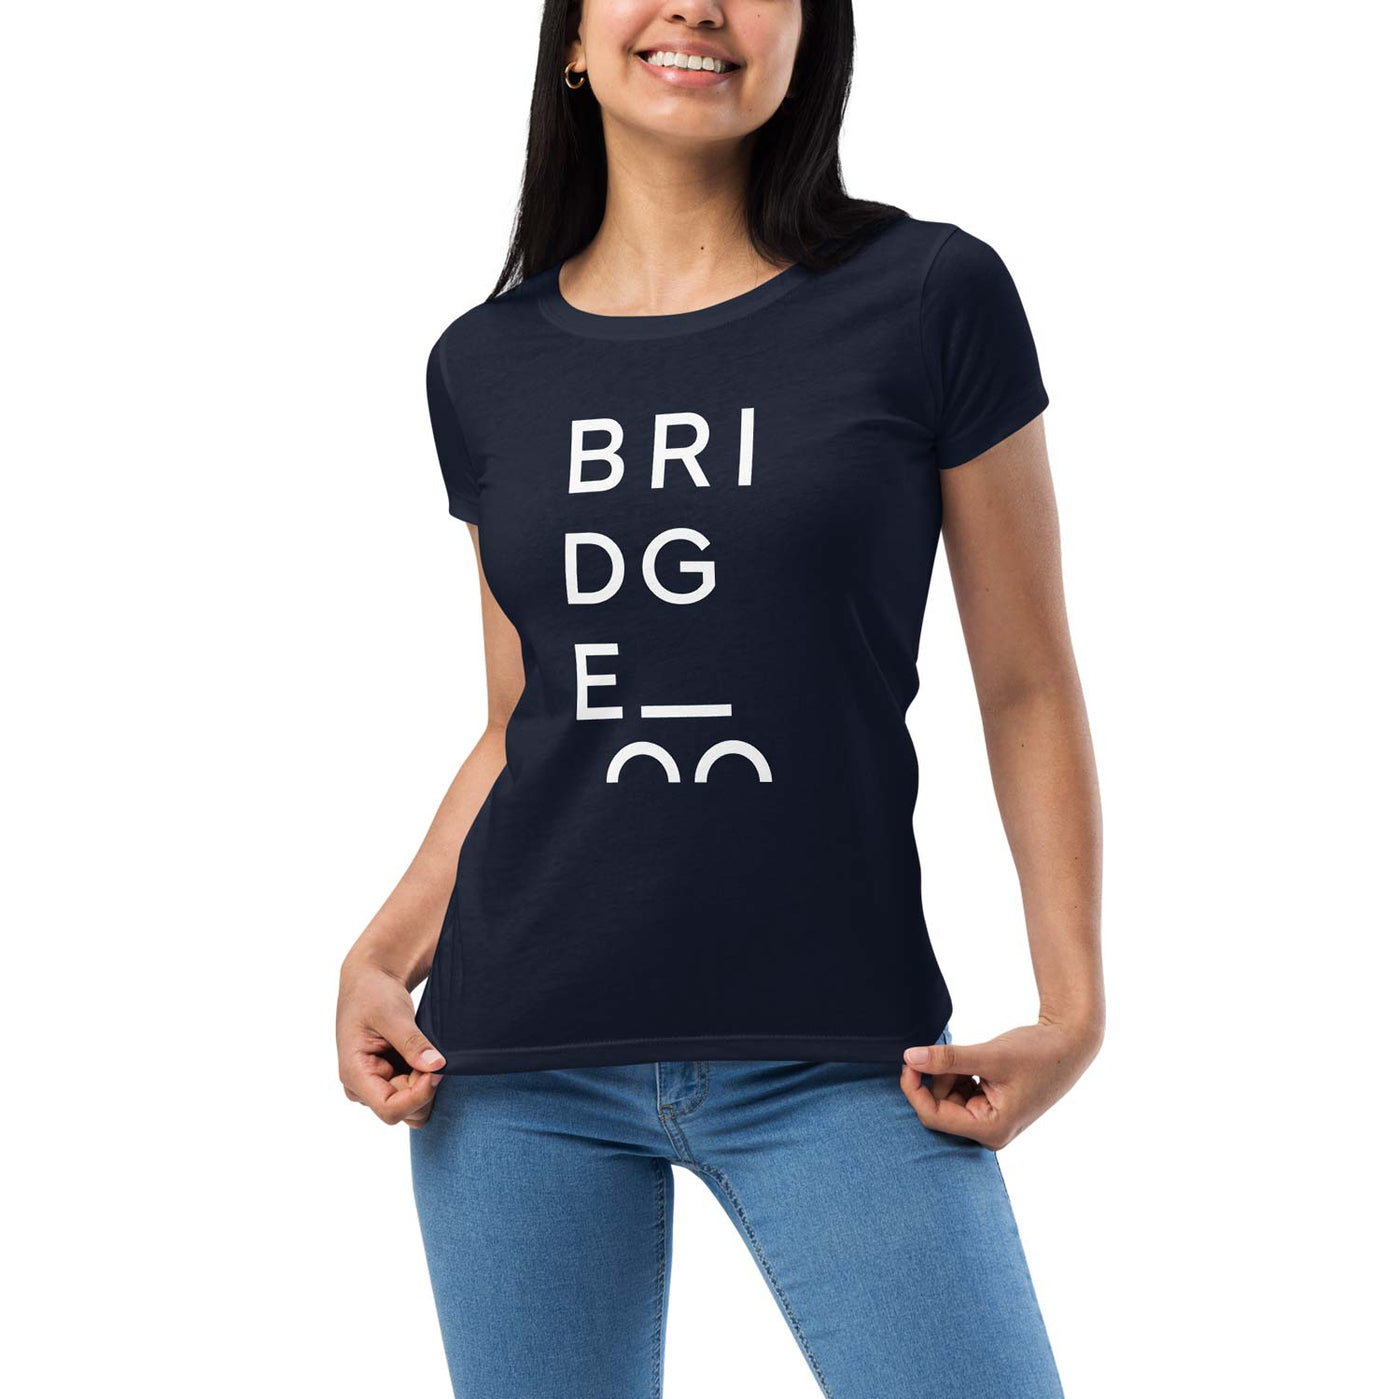 BRIDGE Womens Stacked T-Shirt